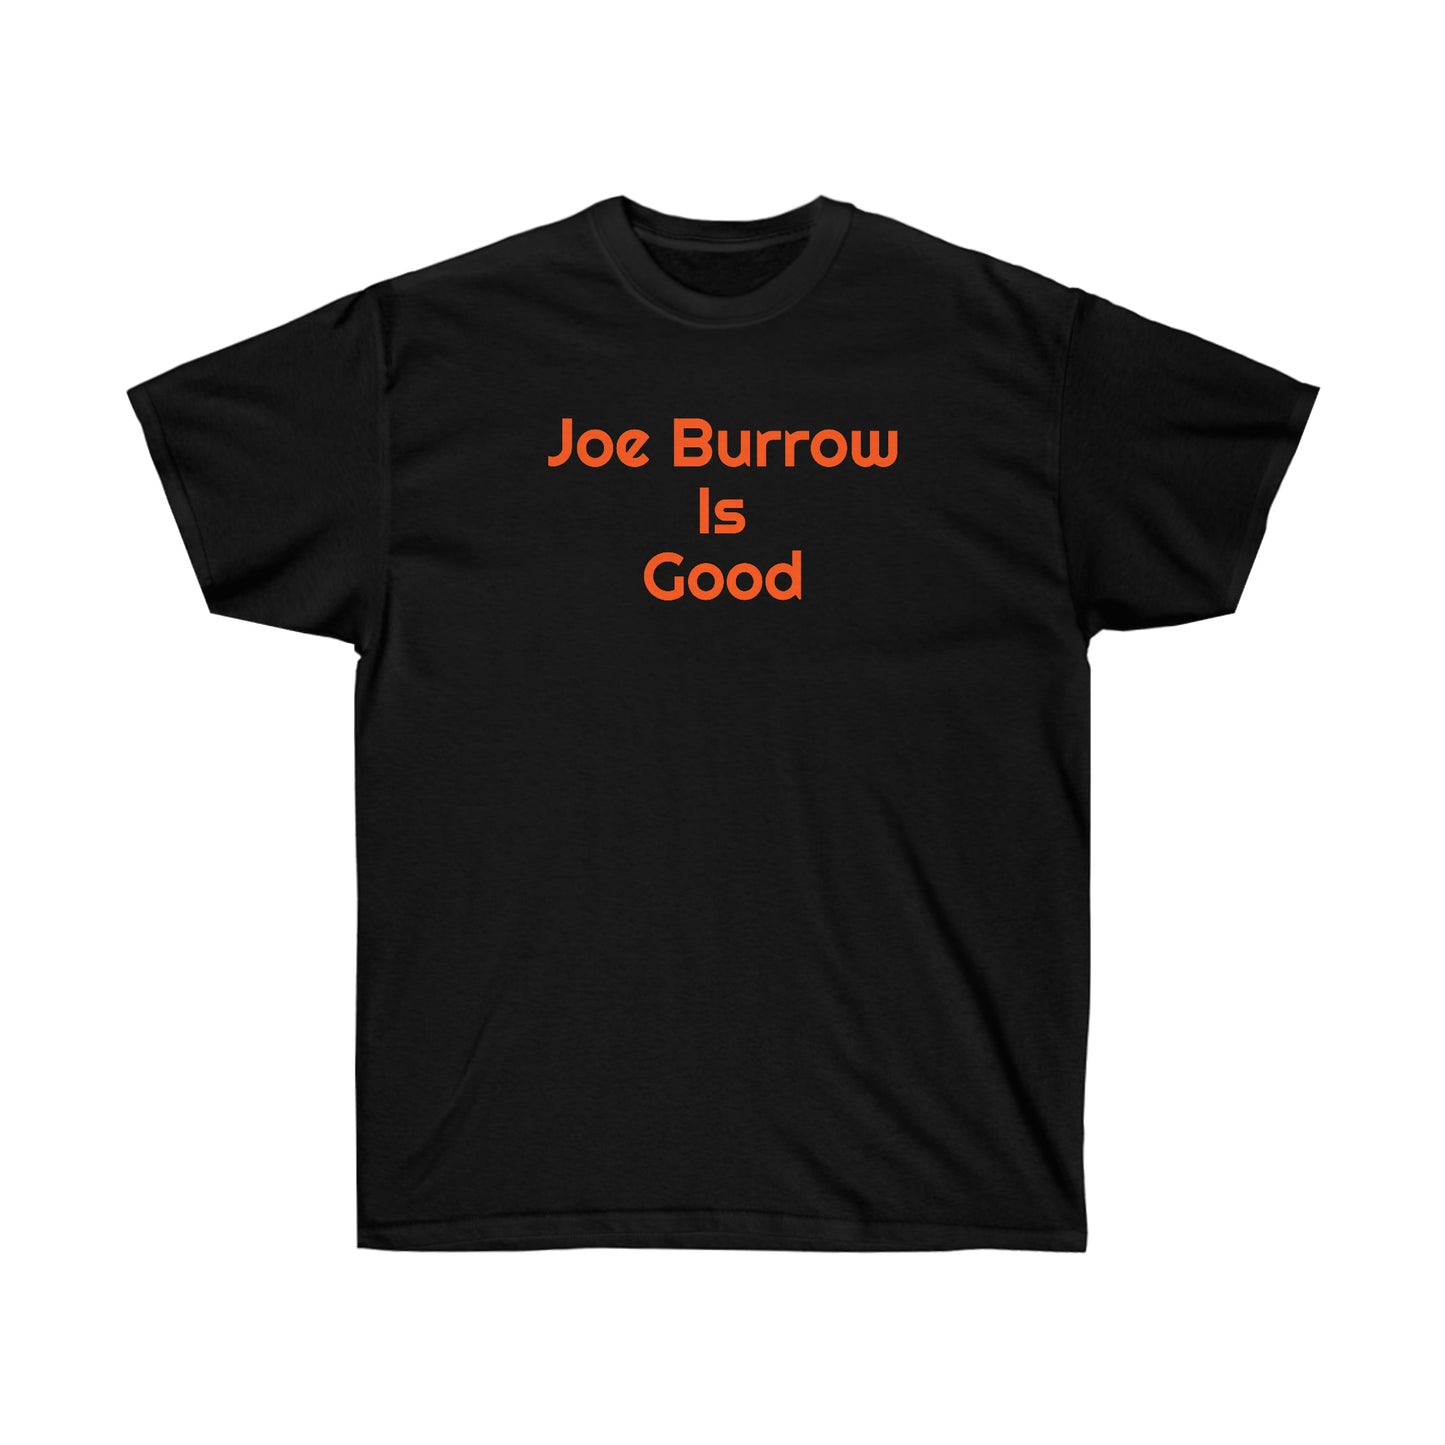 Joe Burrow Is Good Tee - IsGoodBrand